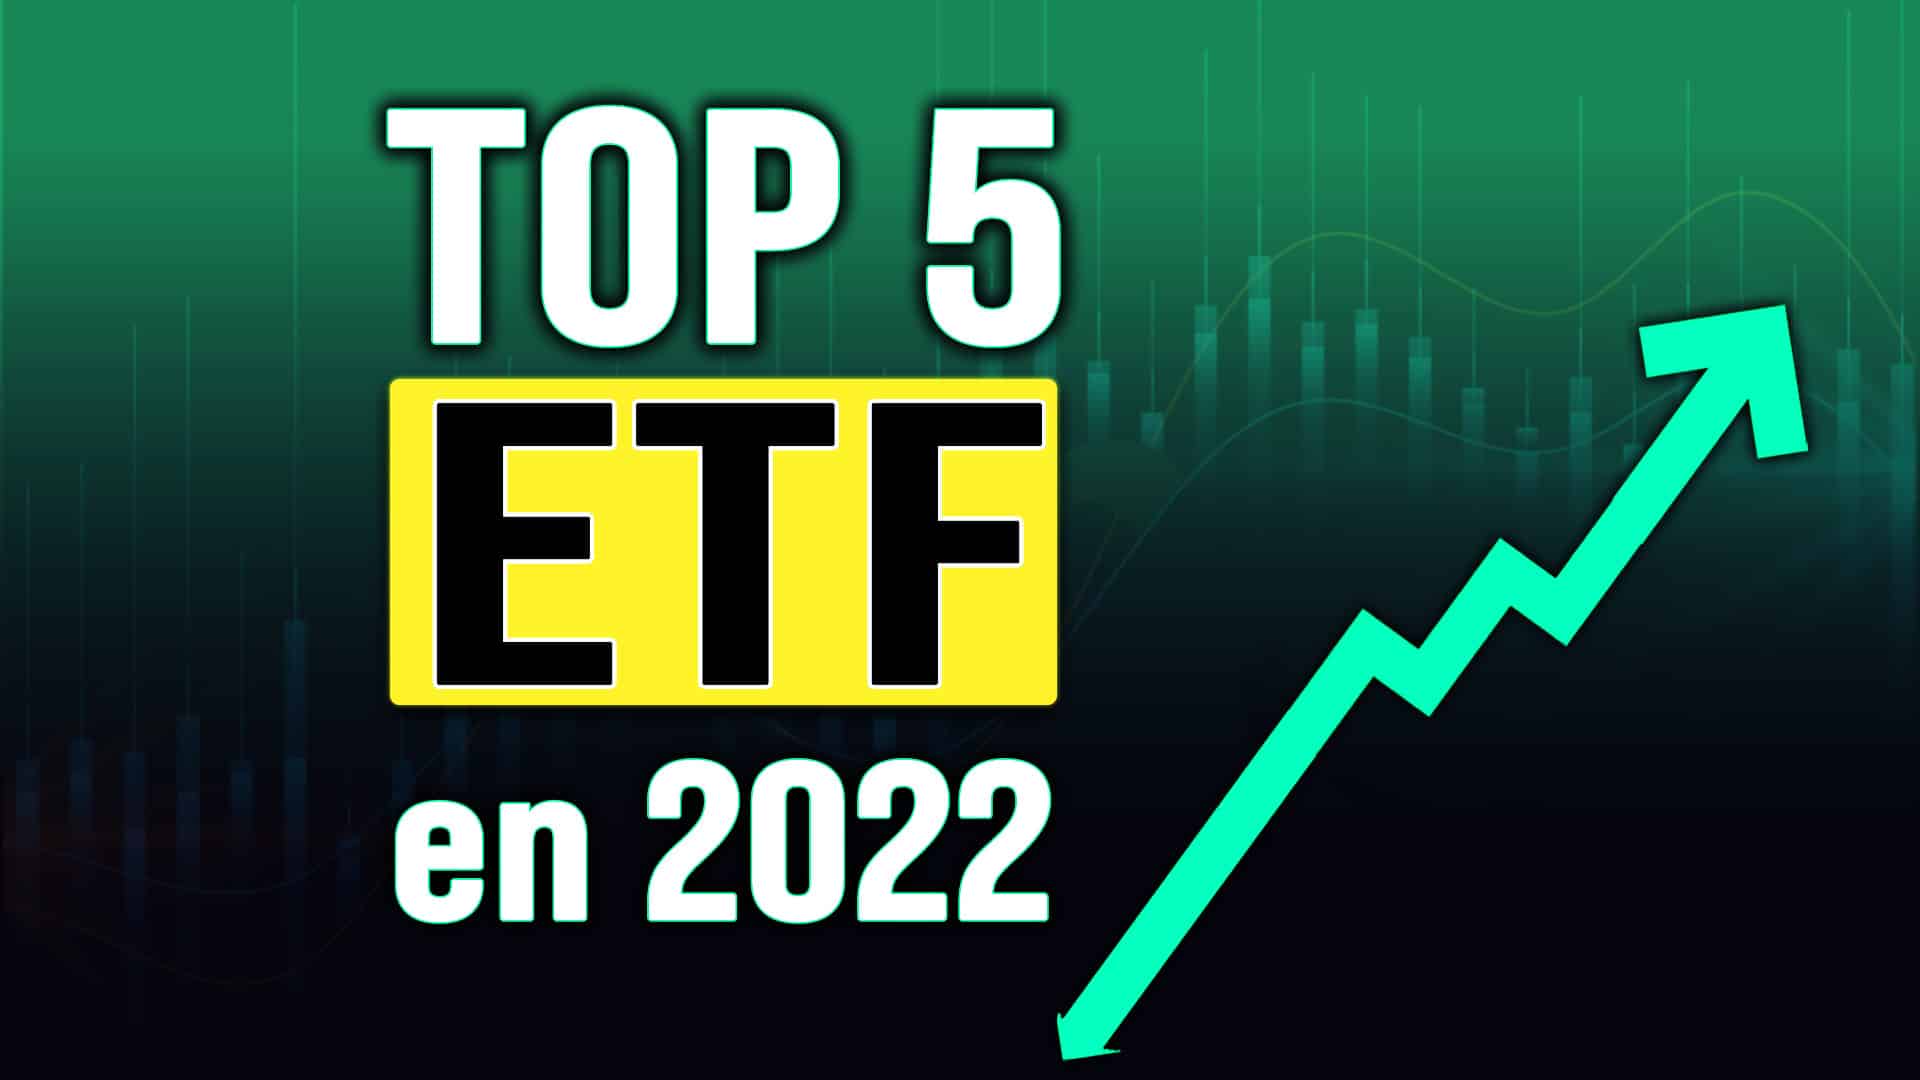 Top 5 ETF 2022